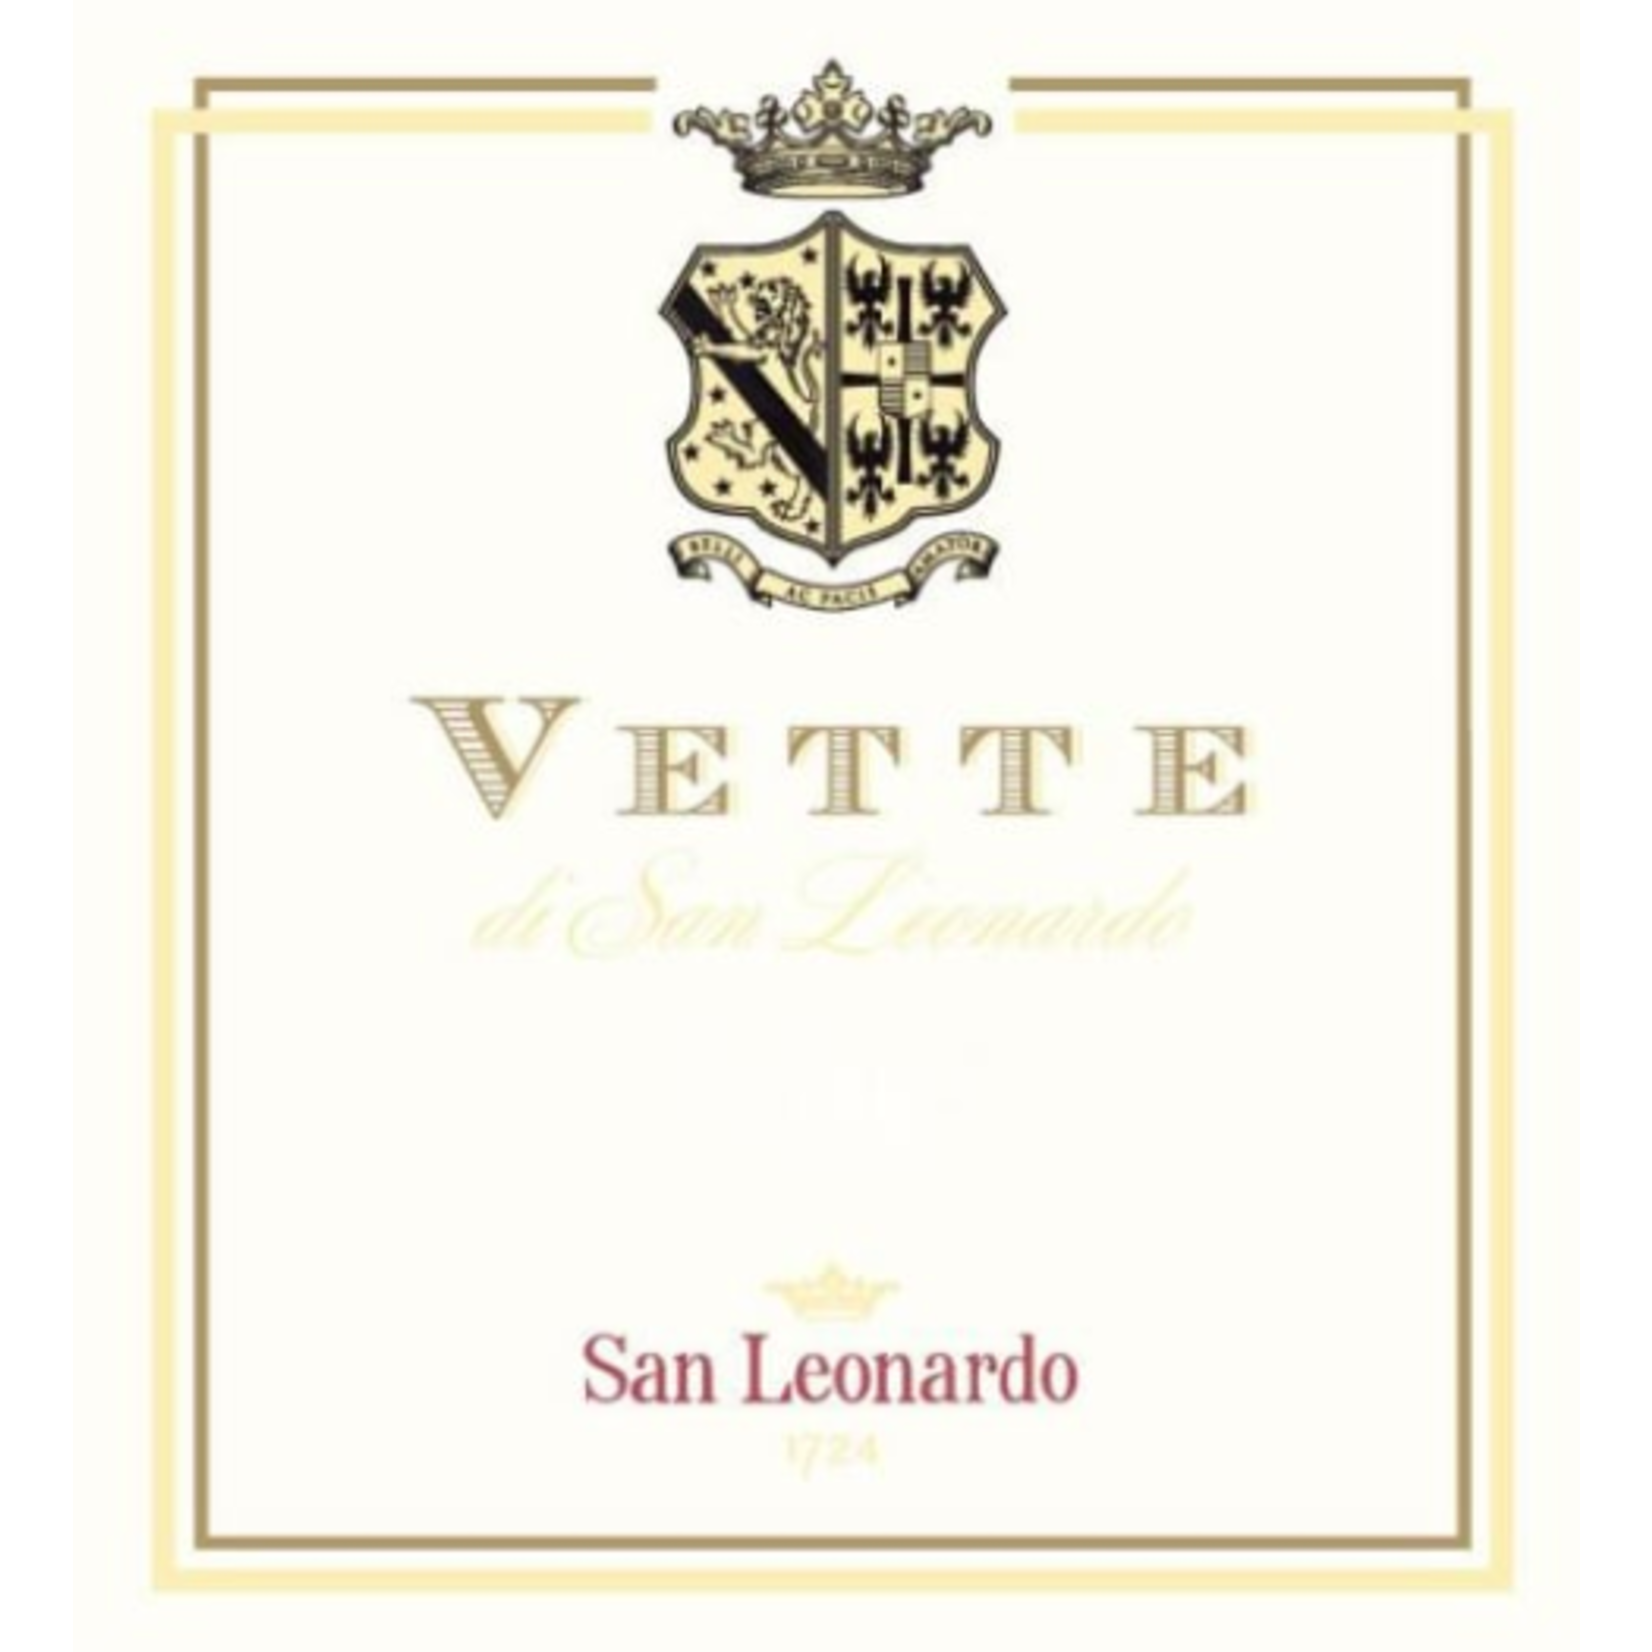 San Leonardo San Leonardo Vette di SanLeonardo Sauvignon Blanc 2020  Trentino-Alto Adige, Italy  92pts-JS